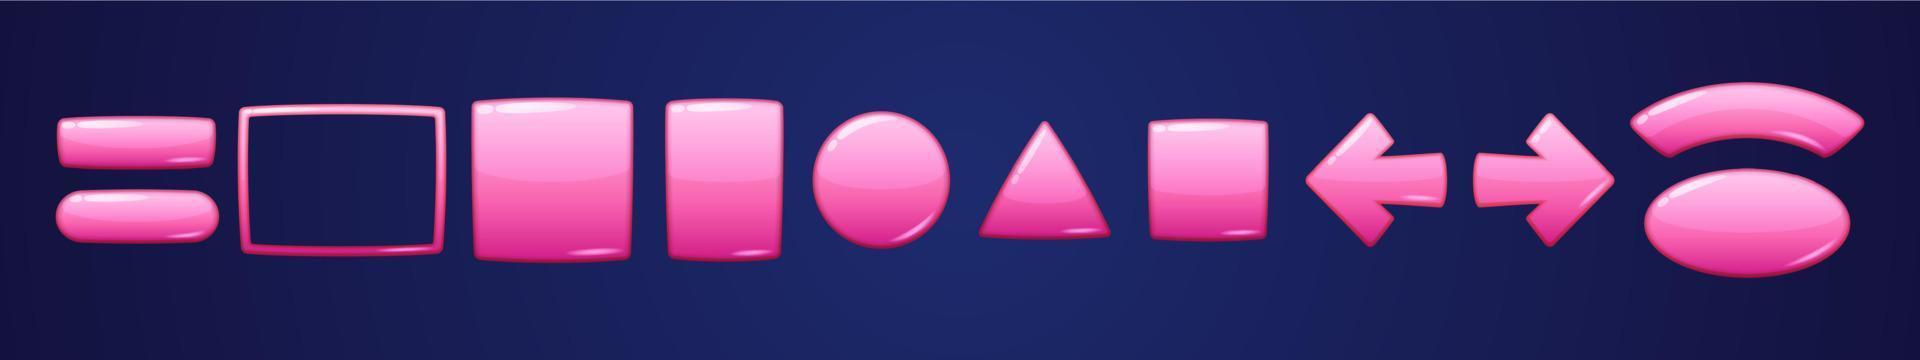 glänzend rosa geometrische Knöpfe für das Spiel vektor